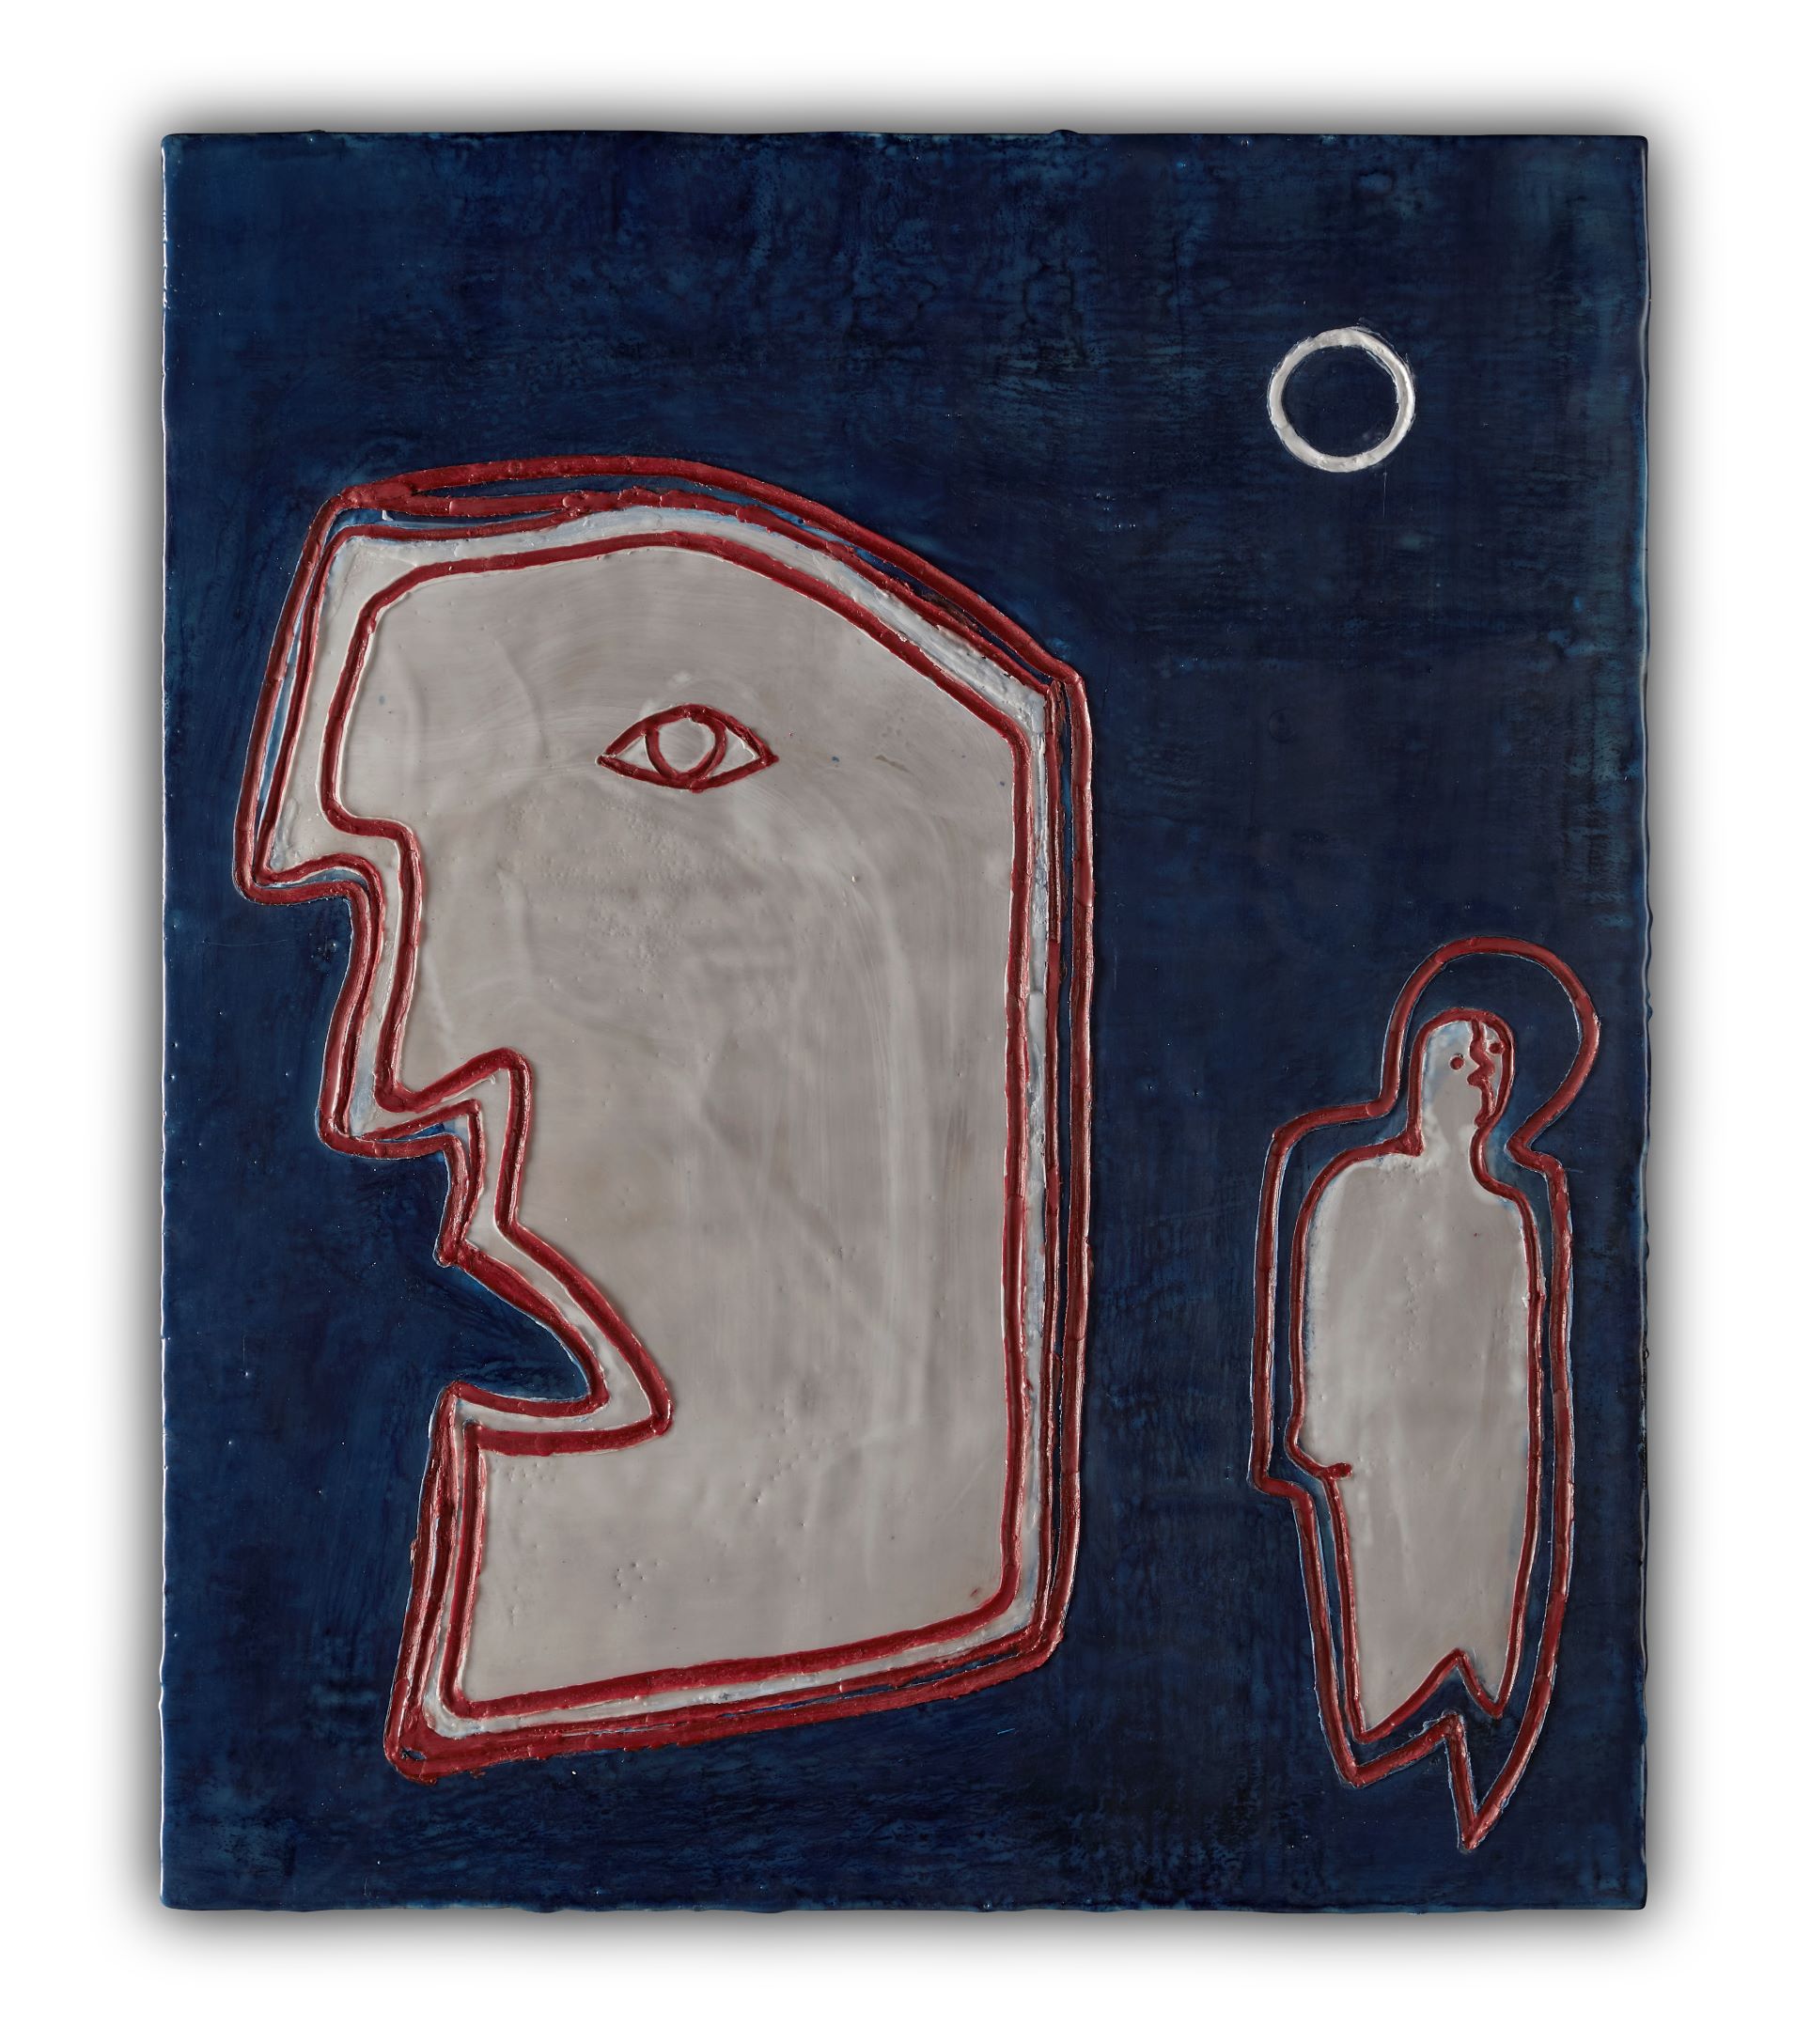 Blaues Bild mit einer kleineren rot umrandeten introvertierten Figur und einem größeren rot umrandeten staundenden Gesicht von der Figur abgewandt